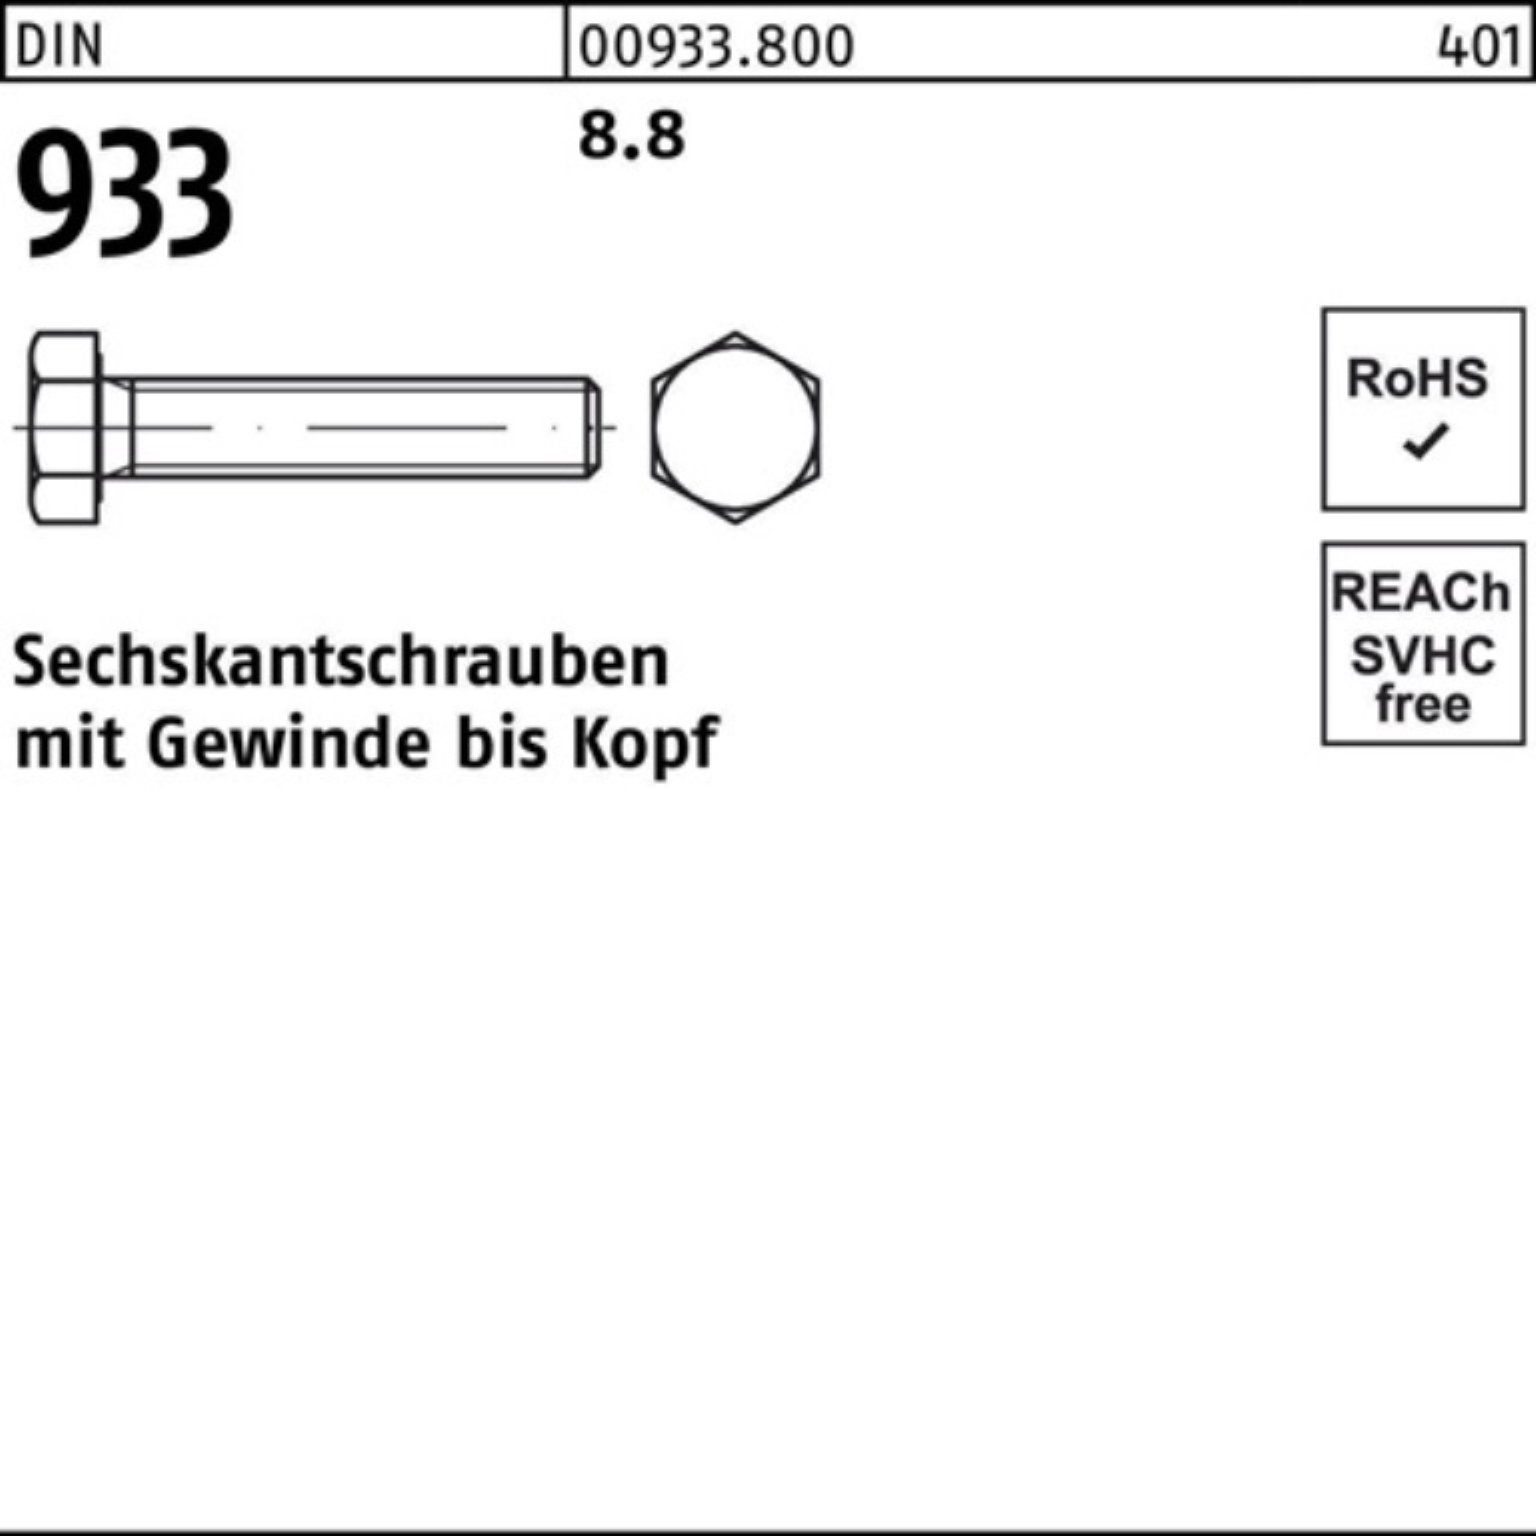 Reyher Sechskantschraube 100er Pack Sechskantschraube 933 240 Stück DIN 8.8 VG DIN 933 50 M10x